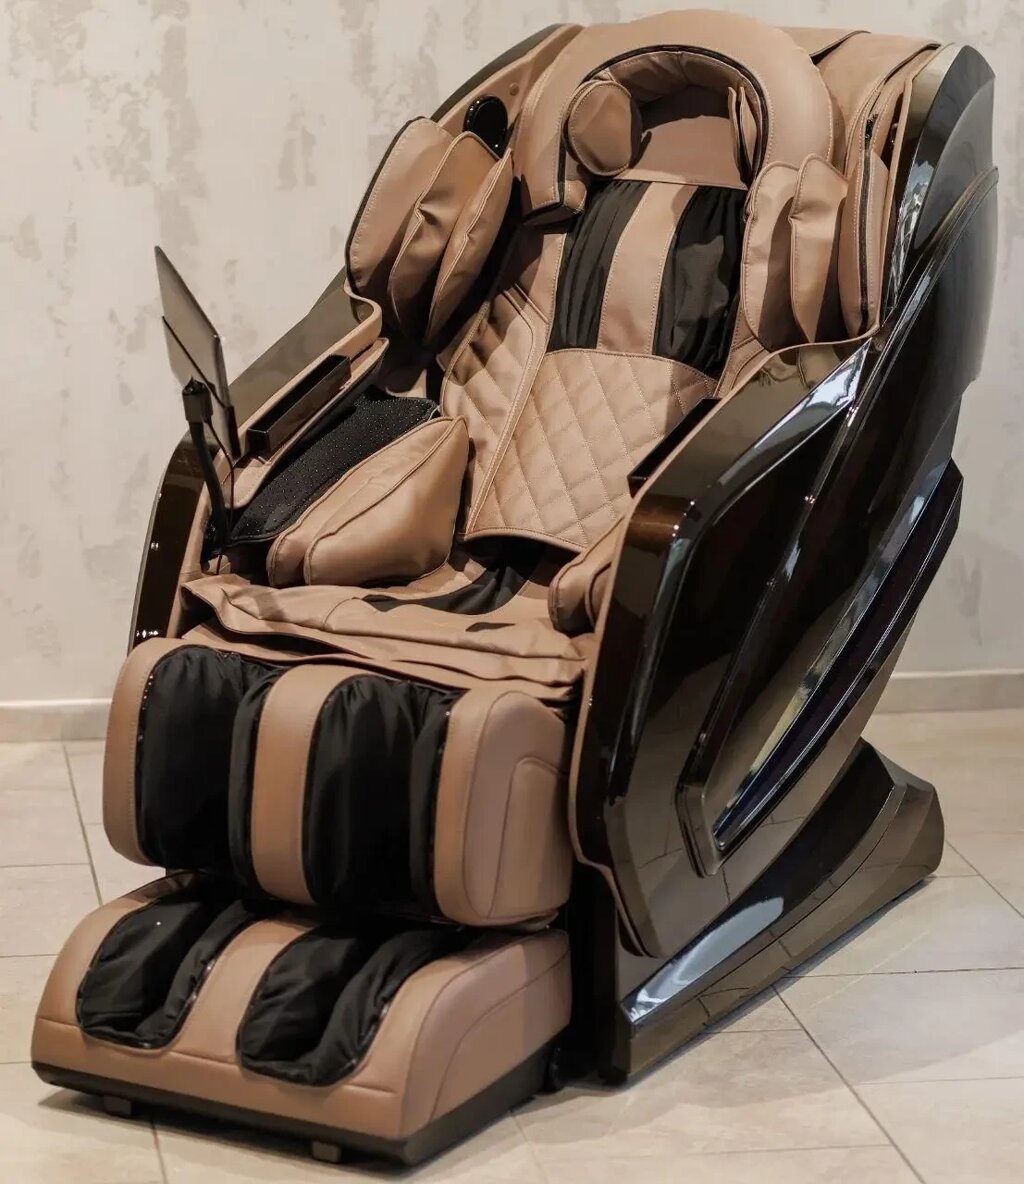 Масажне крісло XZERO LX01 luxury c 4д масажною кареткою і витяжкою спини найкращою в лінійки від компанії Медтехніка ZENET - Товари для здоров'я, затишку та комфорта - фото 1